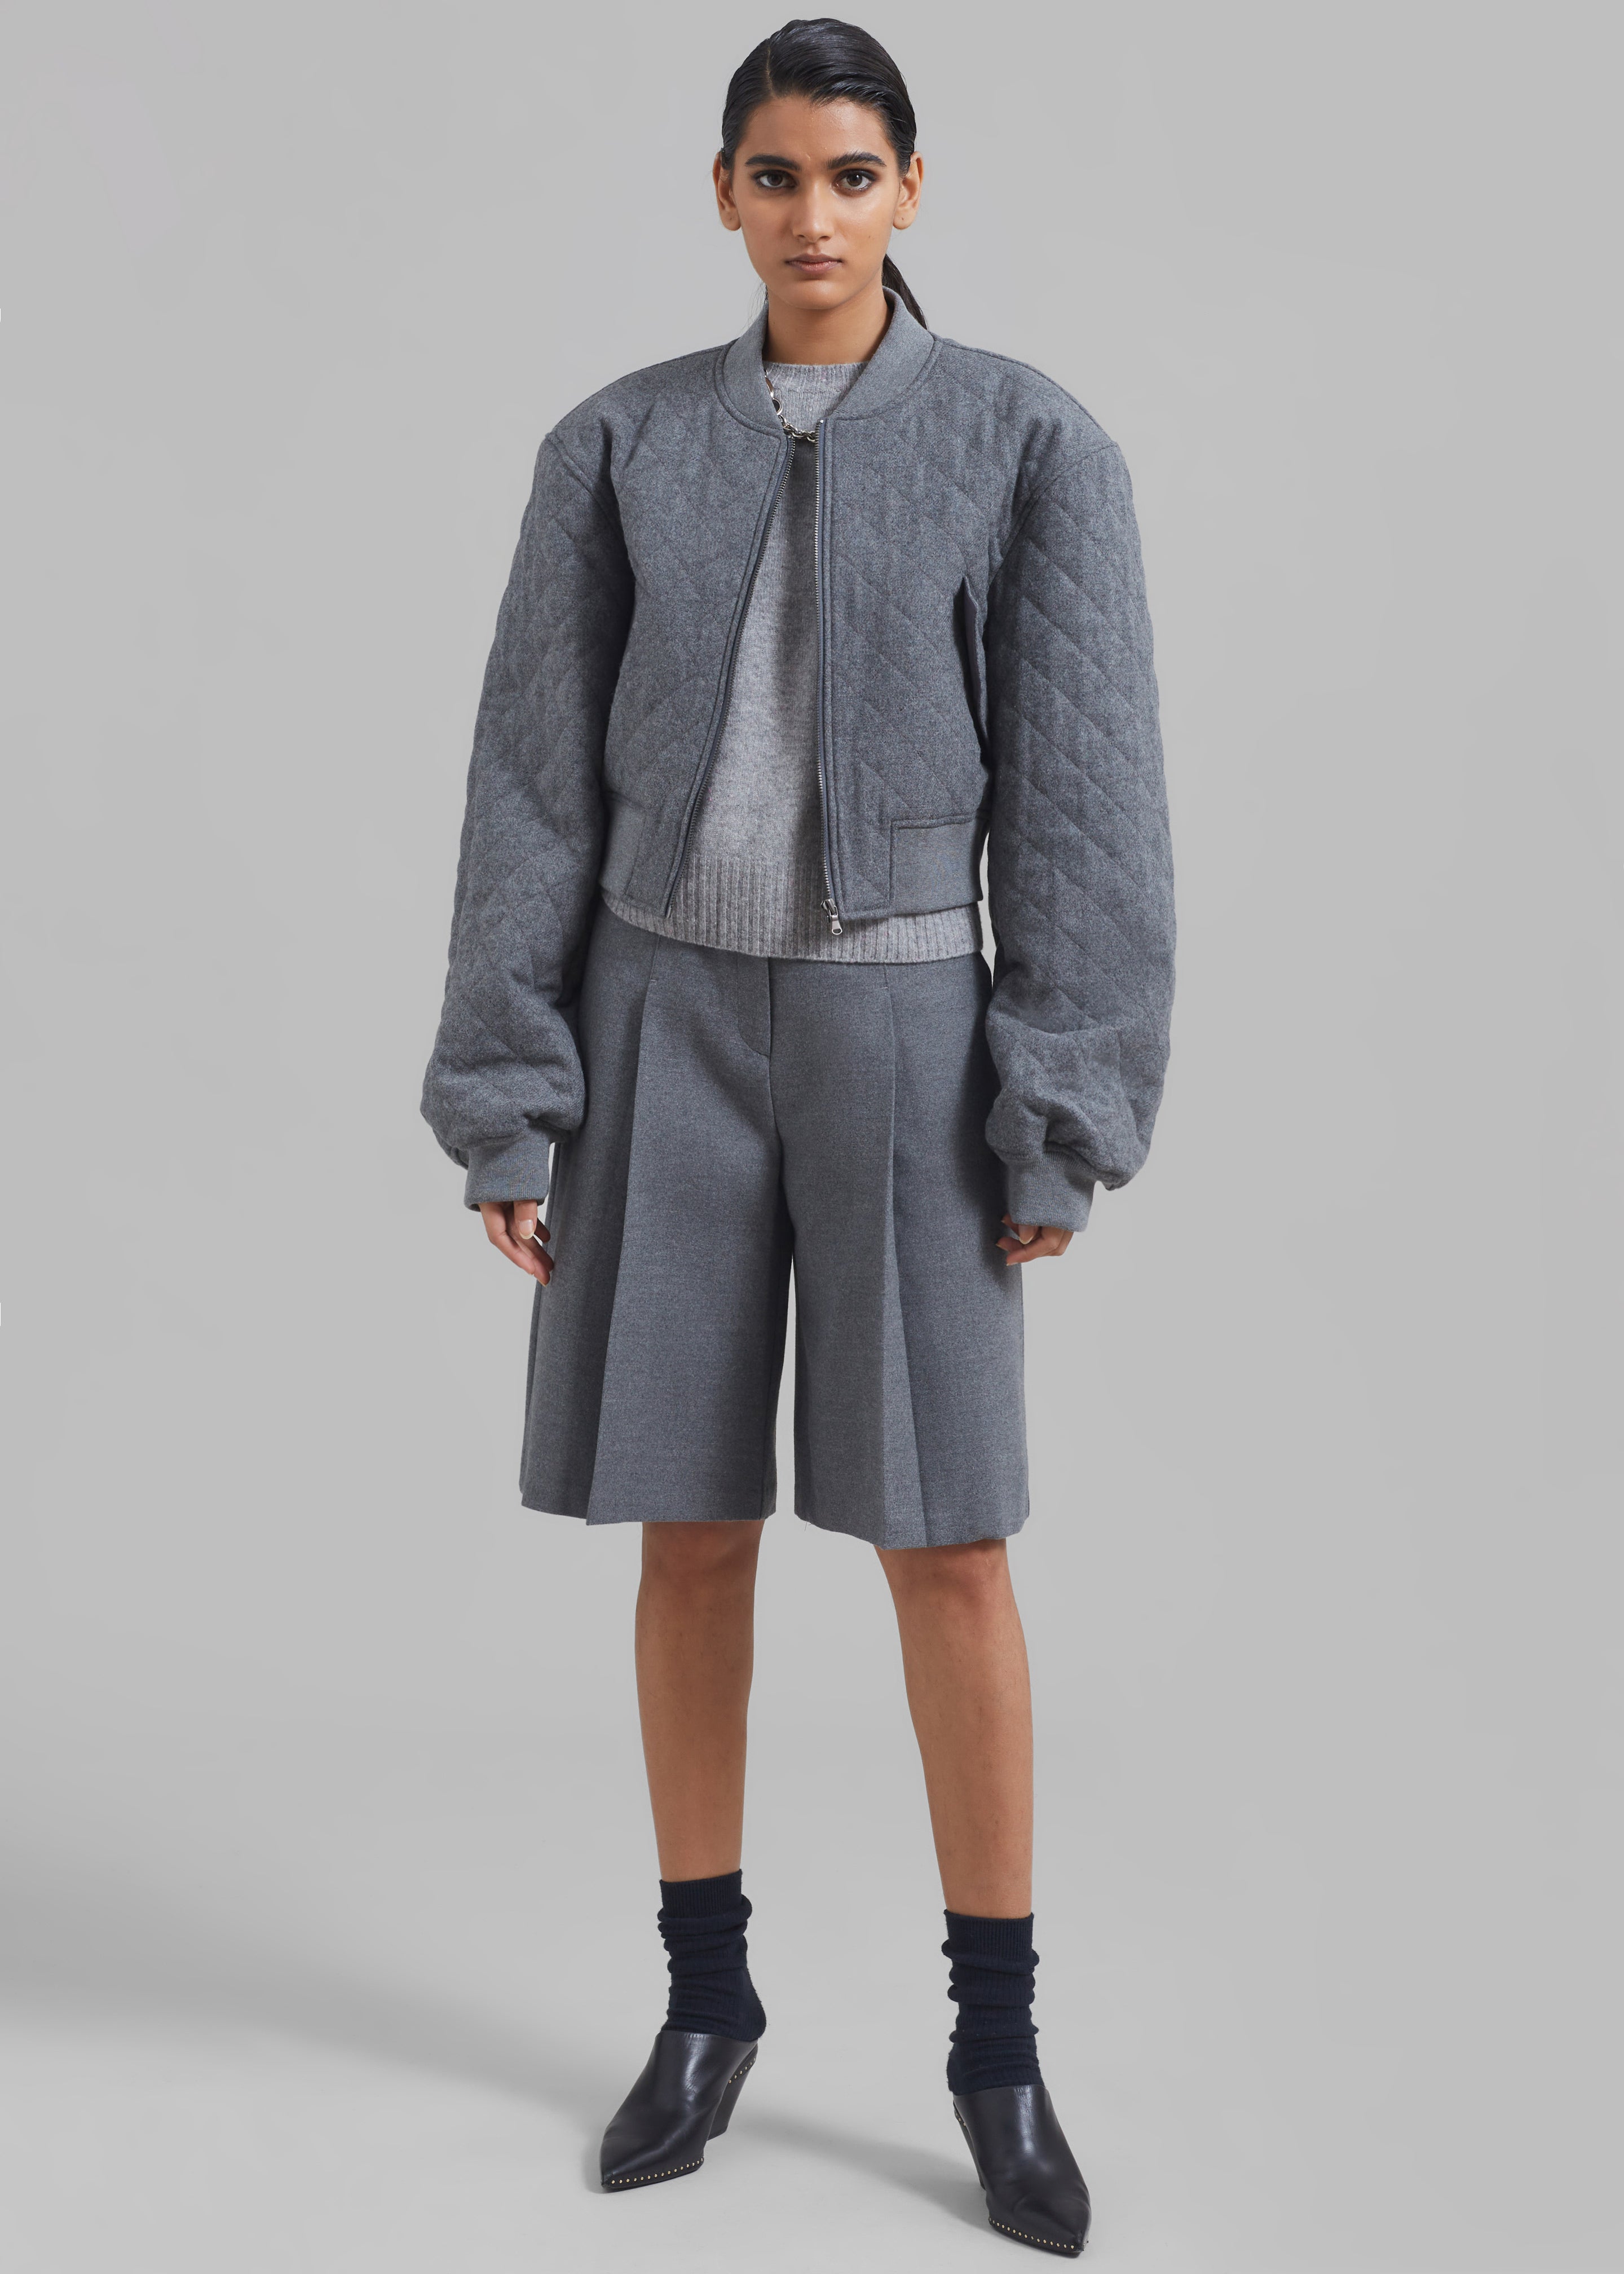 Austen Bermuda Shorts - Grey - 5